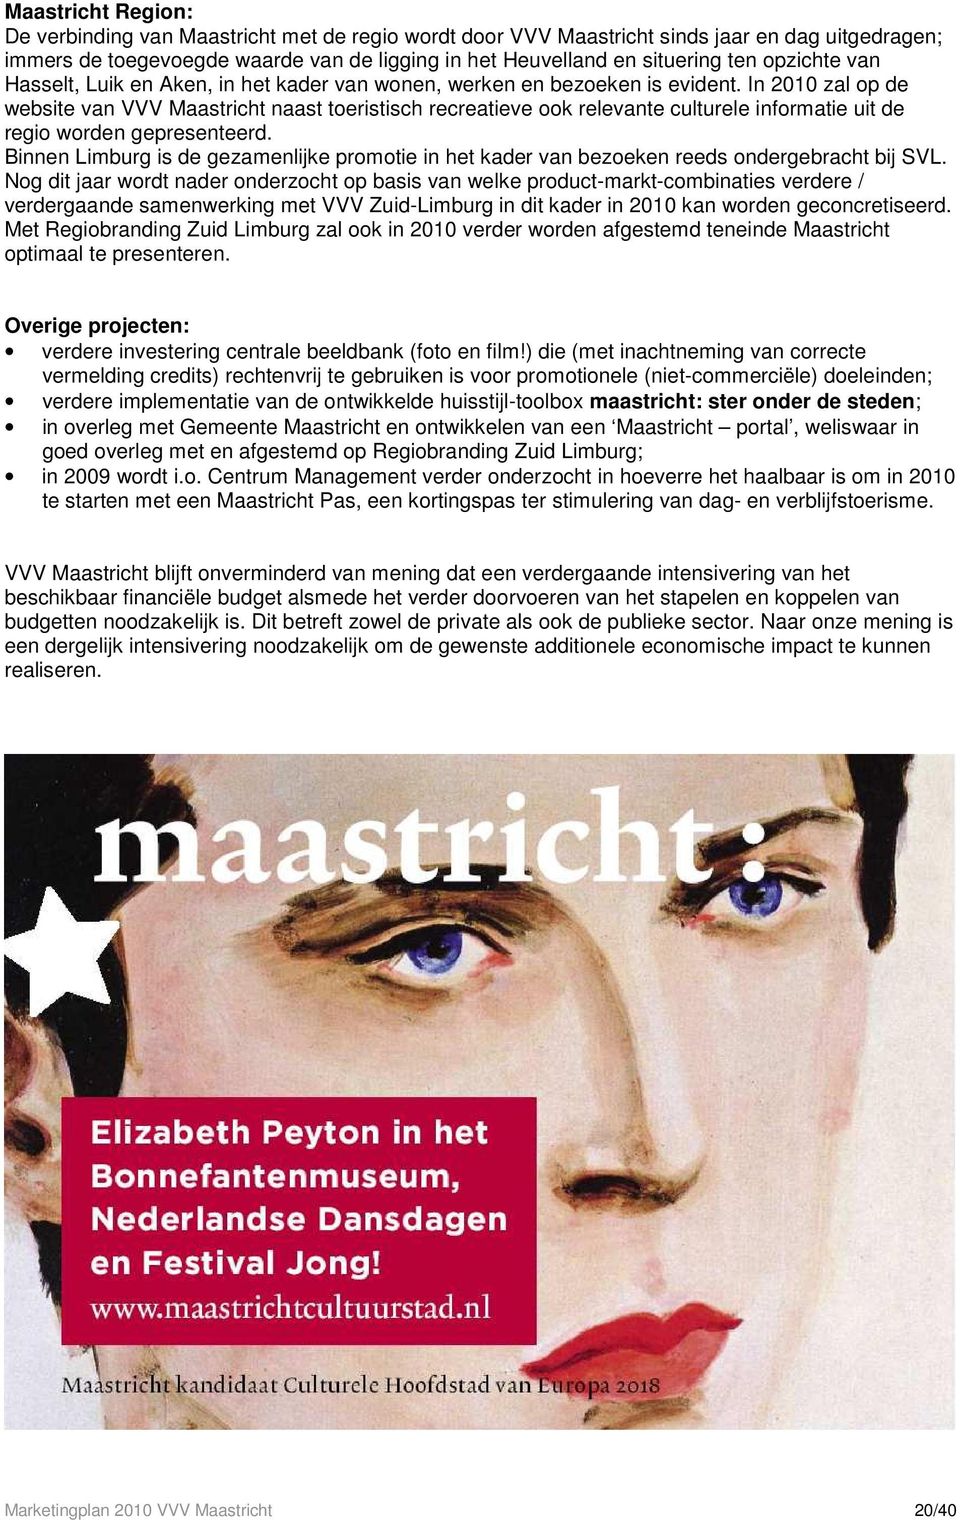 In 2010 zal op de website van VVV Maastricht naast toeristisch recreatieve ook relevante culturele informatie uit de regio worden gepresenteerd.